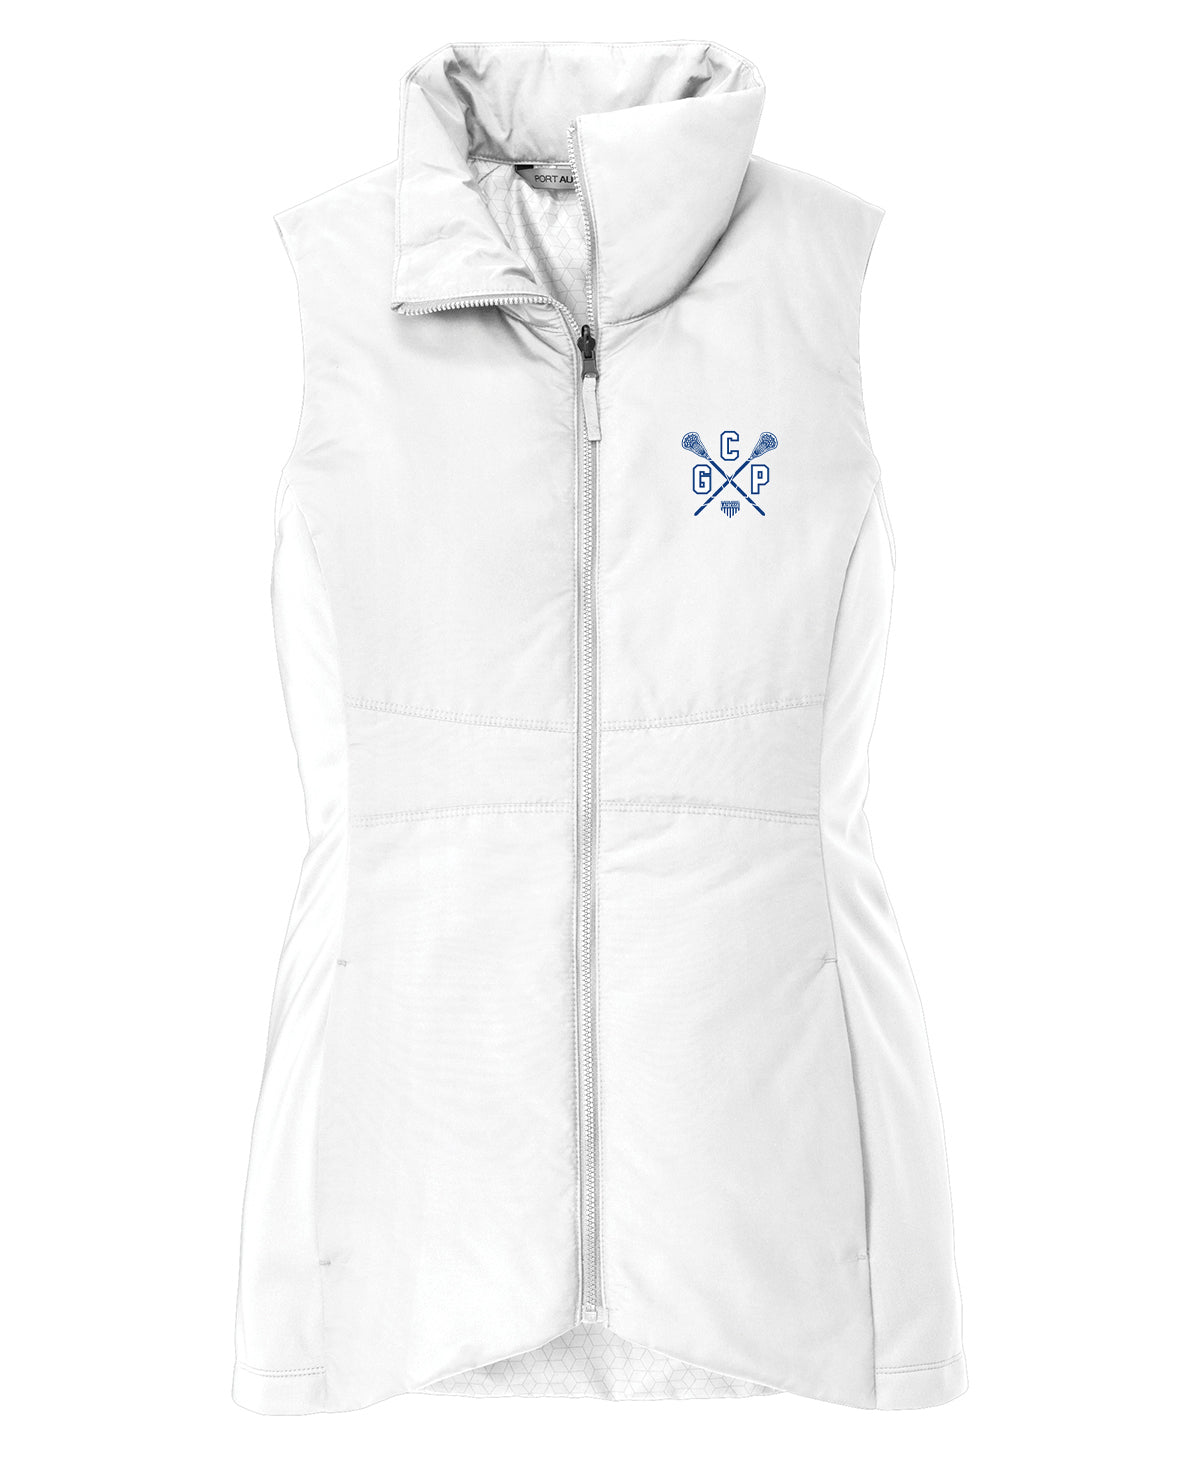 GCP Lacrosse Women's White Vest